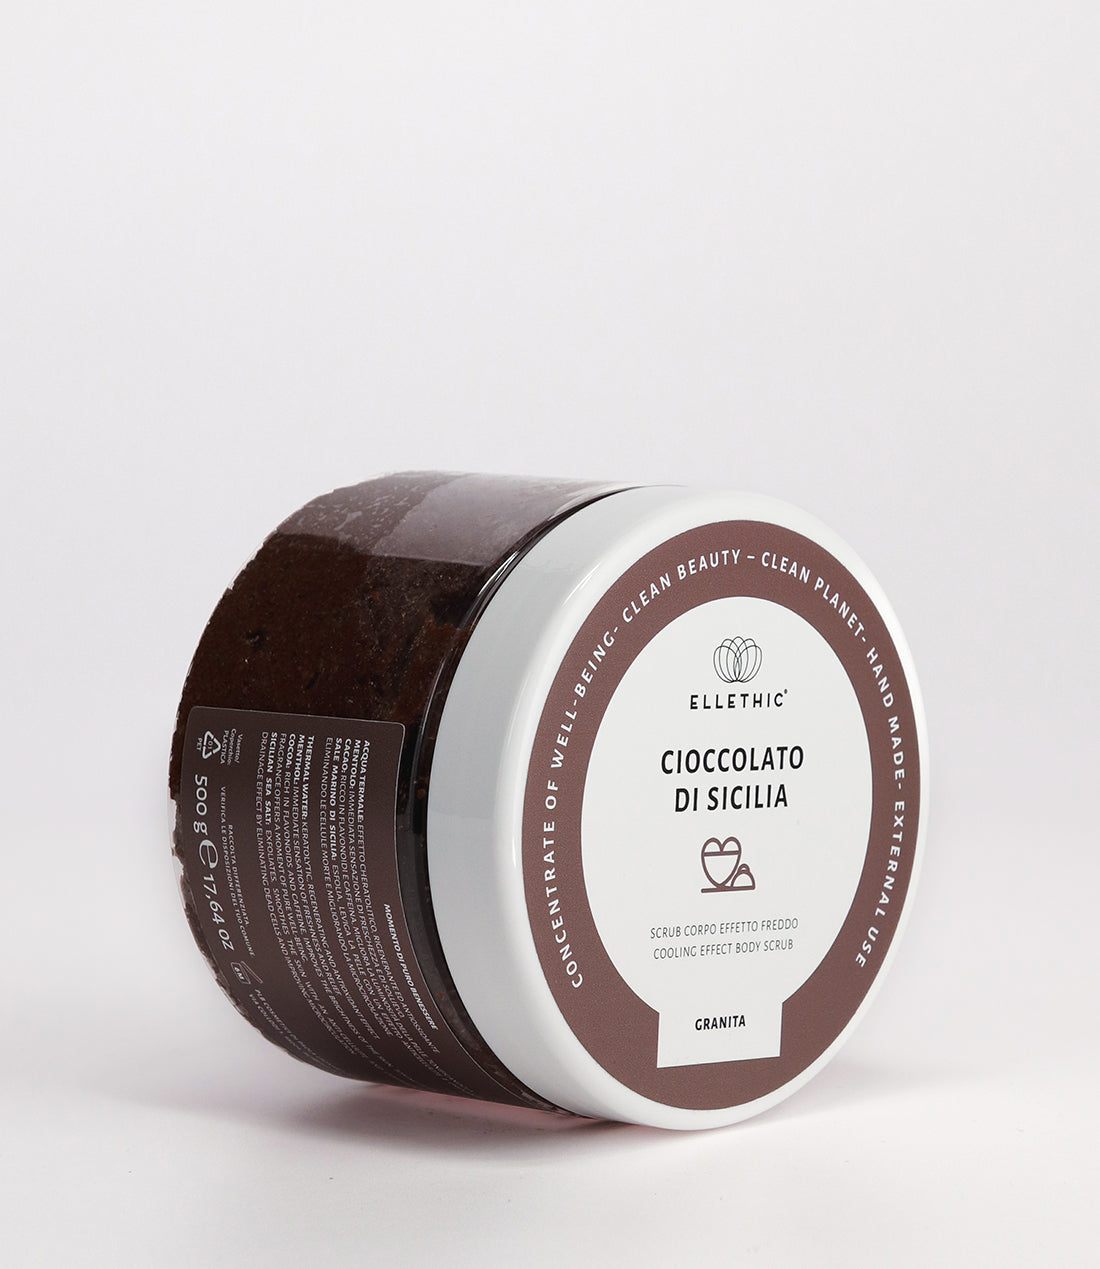 Scrub corpo effetto freddo Cioccolato di Sicilia 500g - Granita